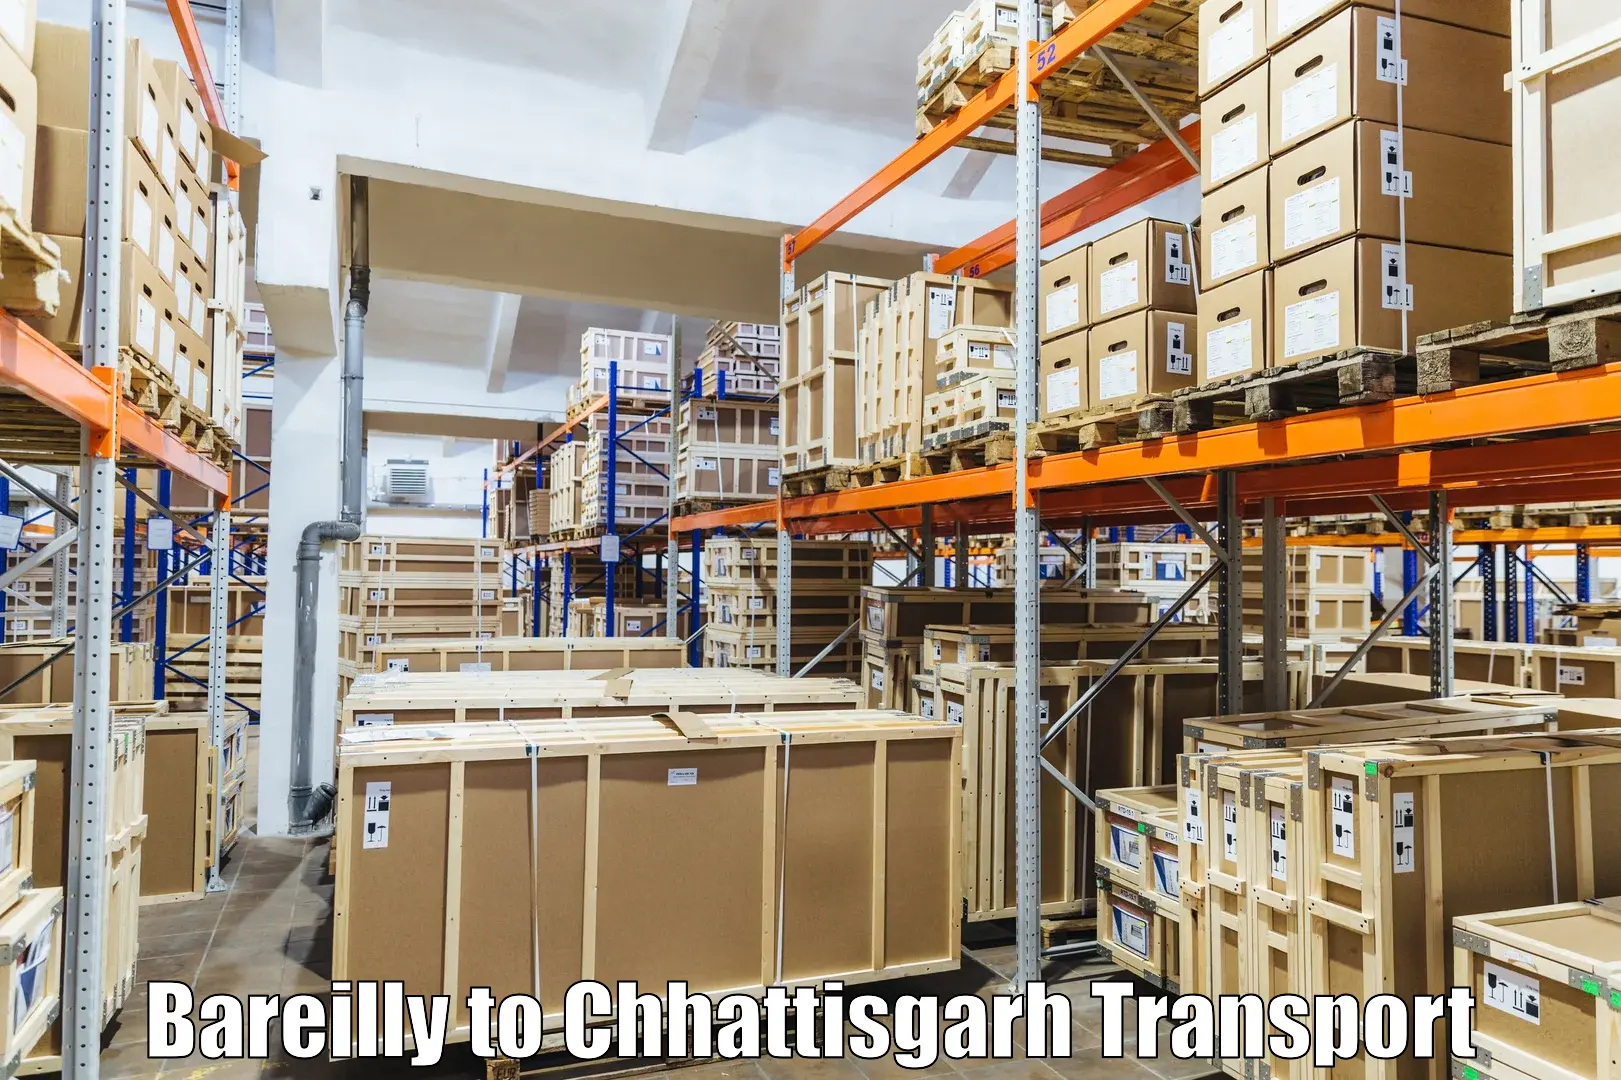 Transport services Bareilly to Bijapur Chhattisgarh